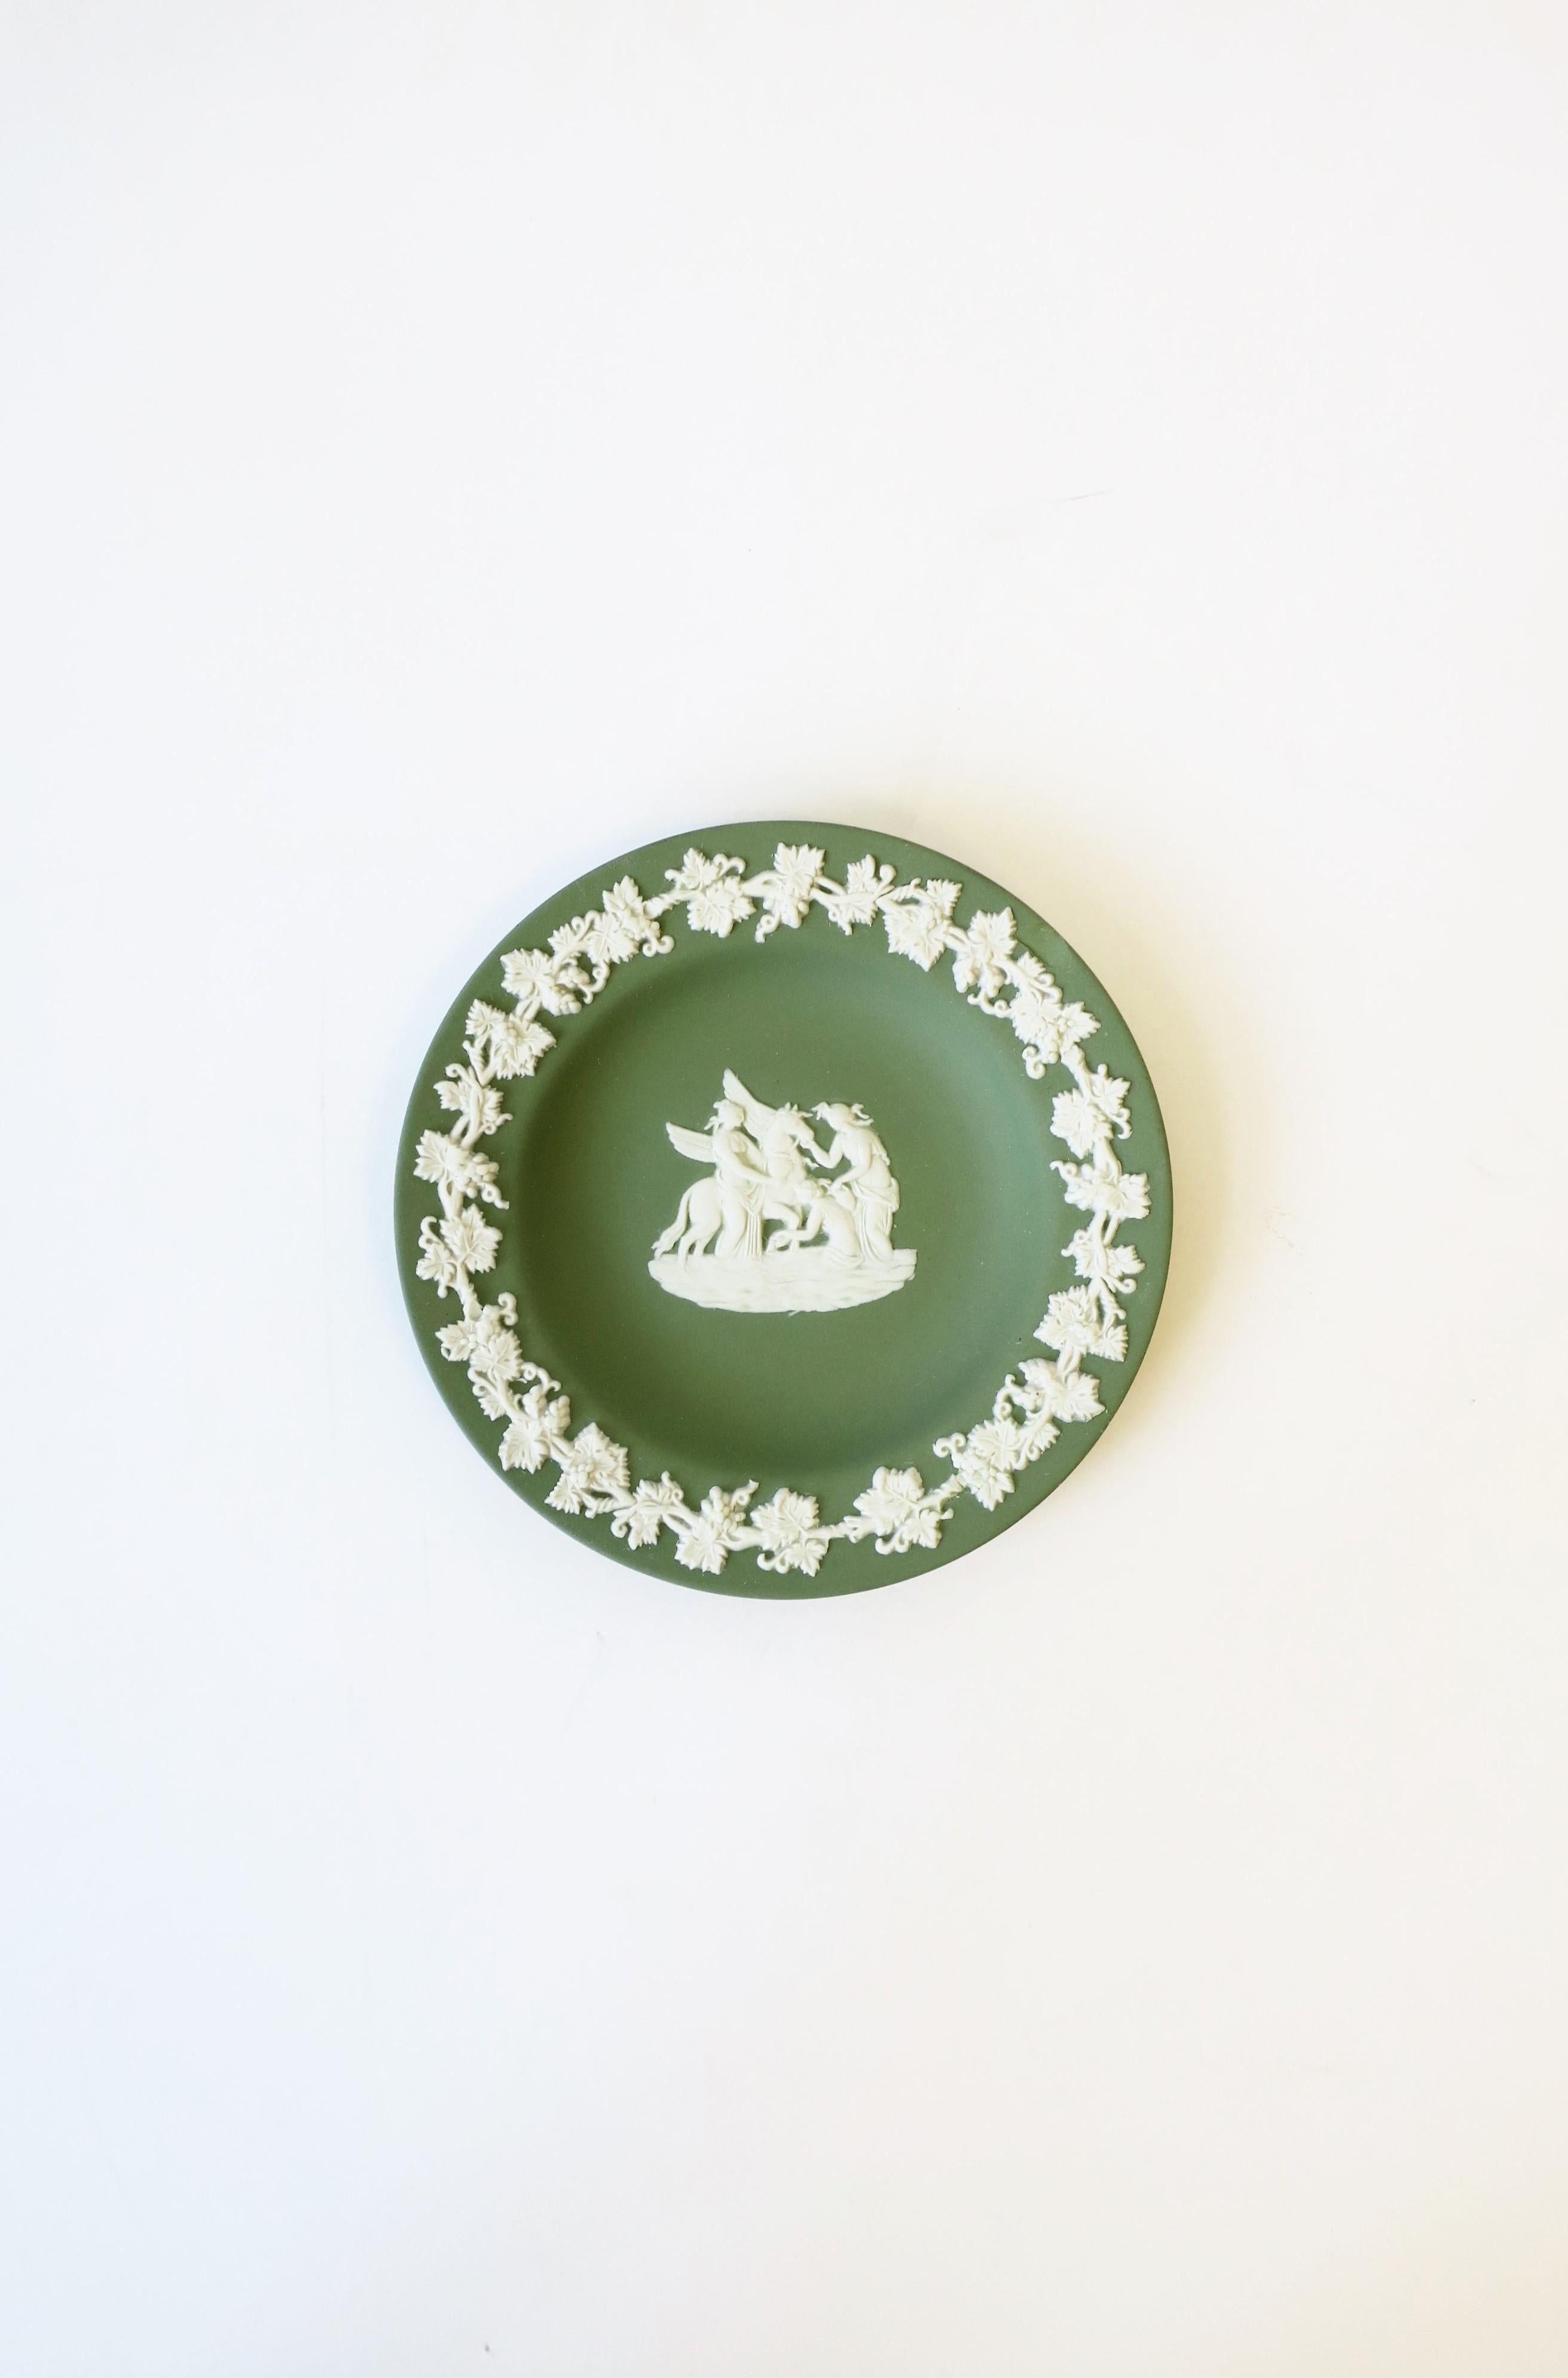 Eine schöne englische Wedgwood Jasperware Salbei grün und weiß runde Schmuckschale mit neoklassischem Design, um 20. Jahrhundert, 1979, England. Das Stück ist ein mattes Steingut in einem hellen Grün mit einem weißen neoklassischen Relief in der